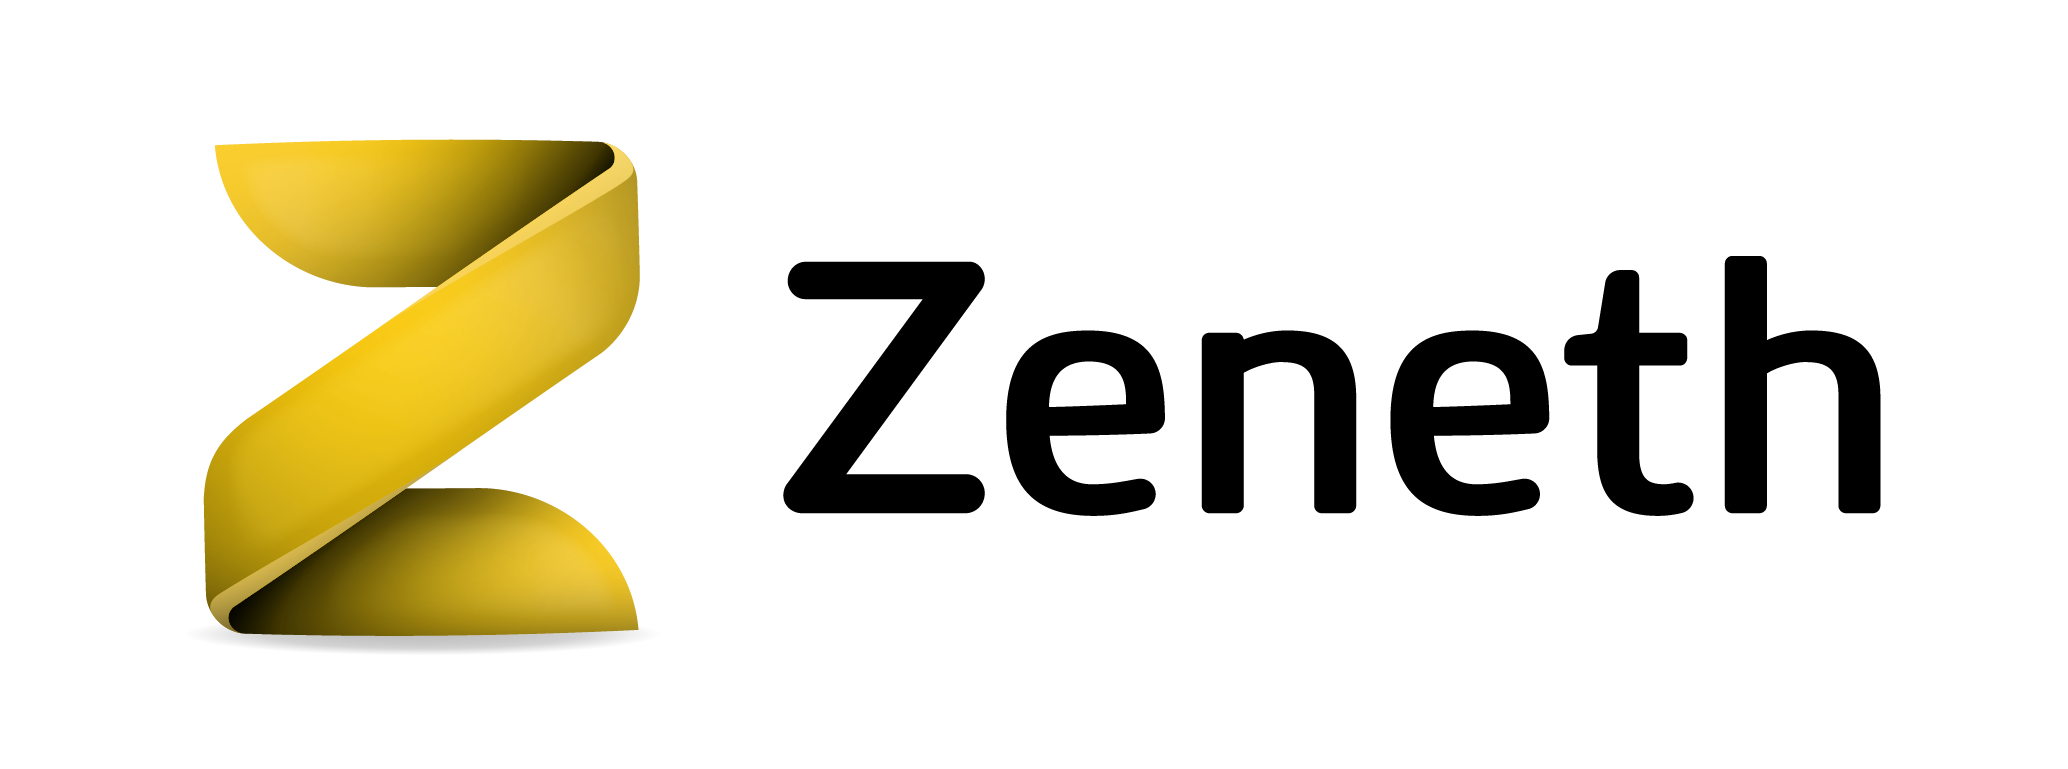 zeneth logo